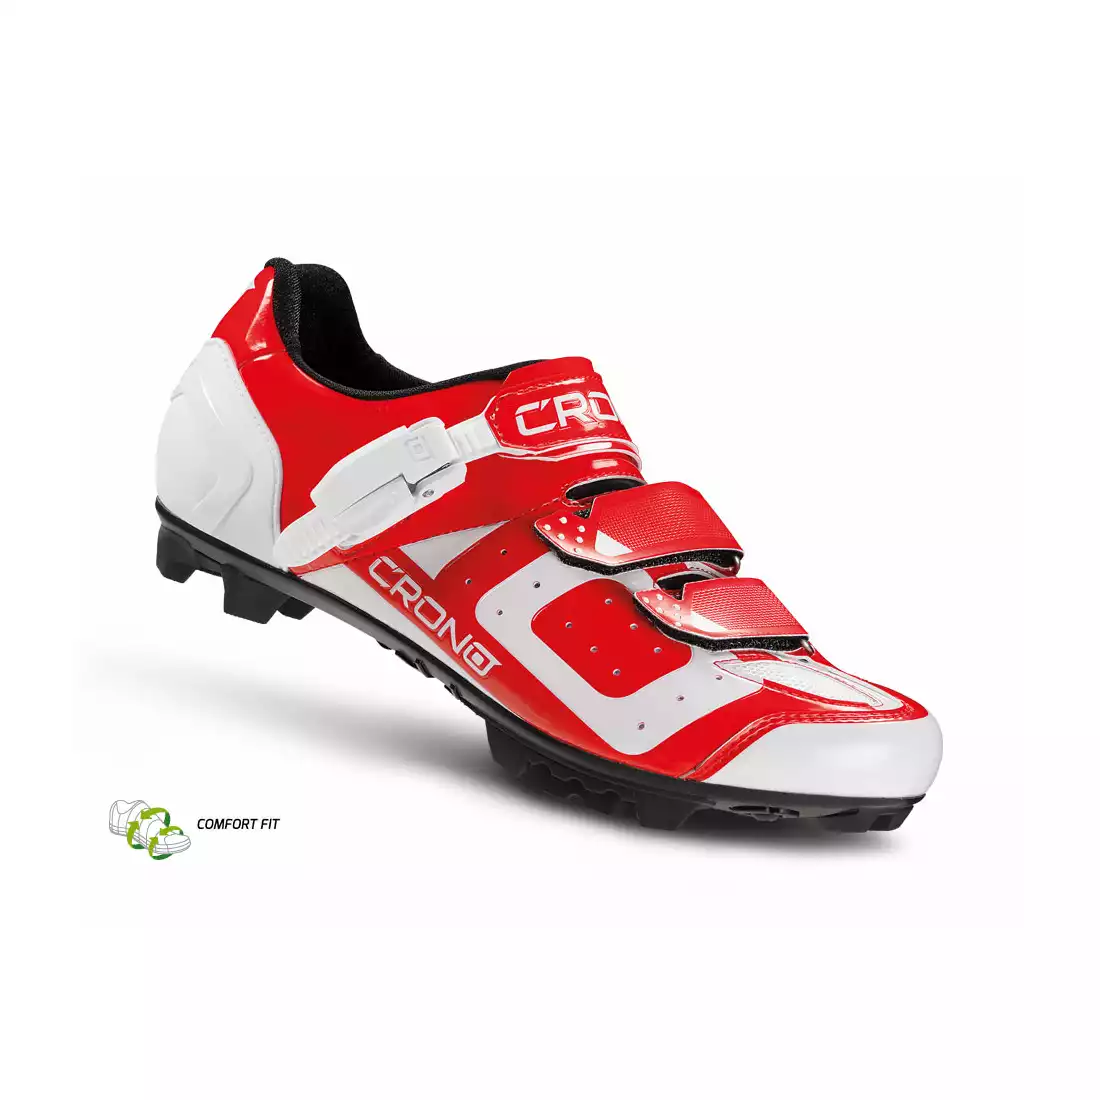 CRONO CX3 nylon - buty rowerowe MTB, czerwone